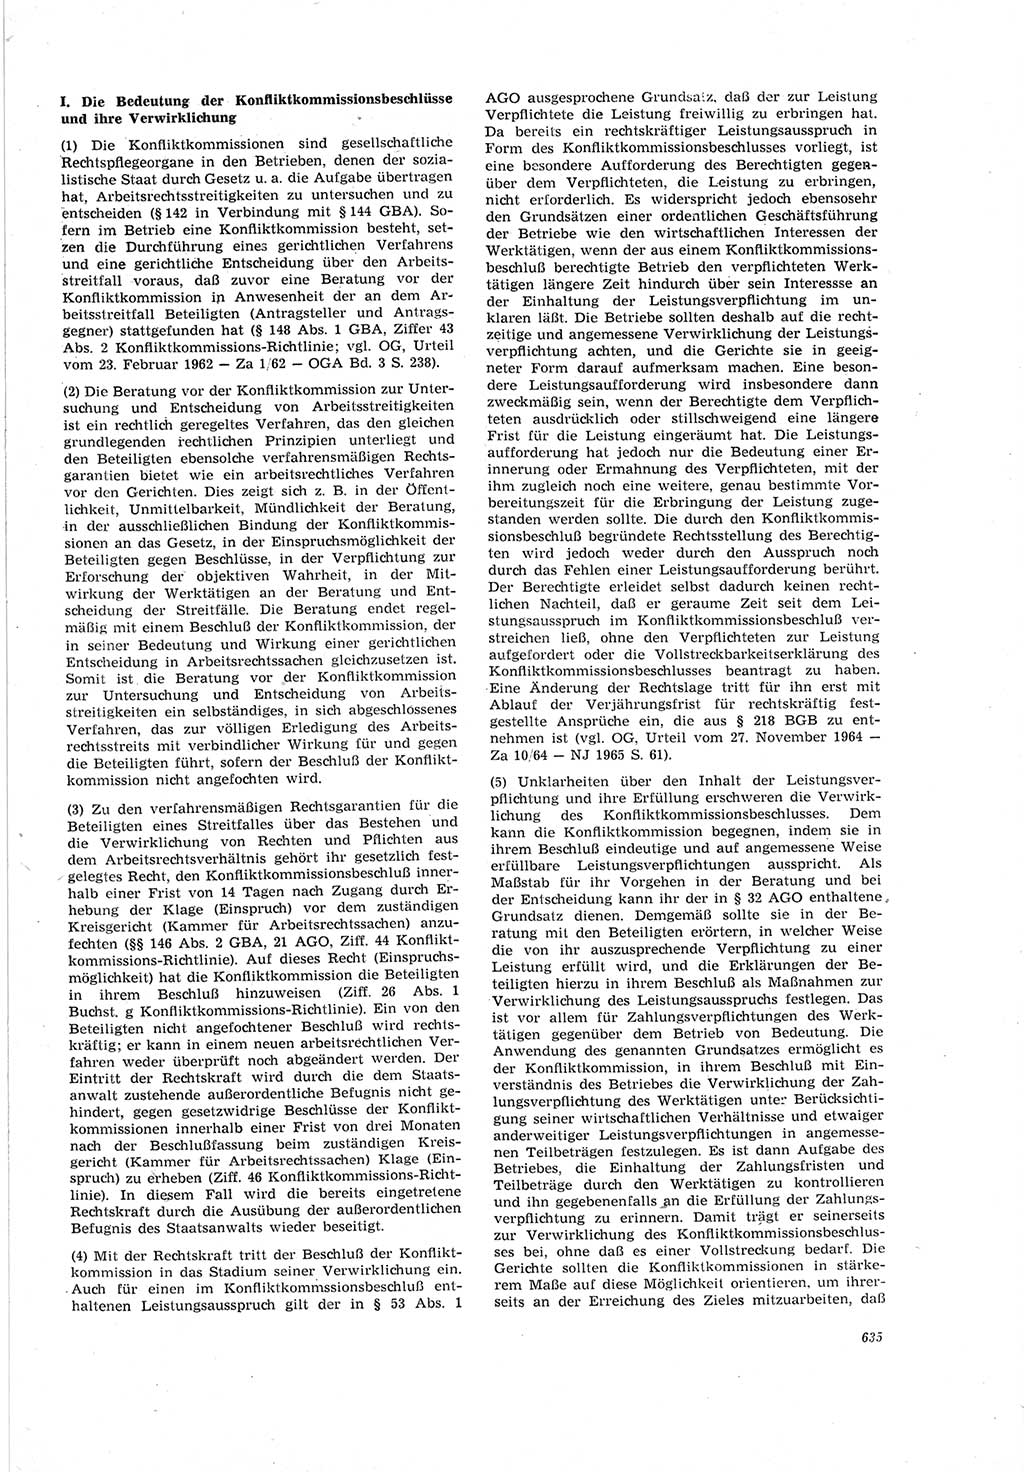 Neue Justiz (NJ), Zeitschrift für Recht und Rechtswissenschaft [Deutsche Demokratische Republik (DDR)], 19. Jahrgang 1965, Seite 635 (NJ DDR 1965, S. 635)